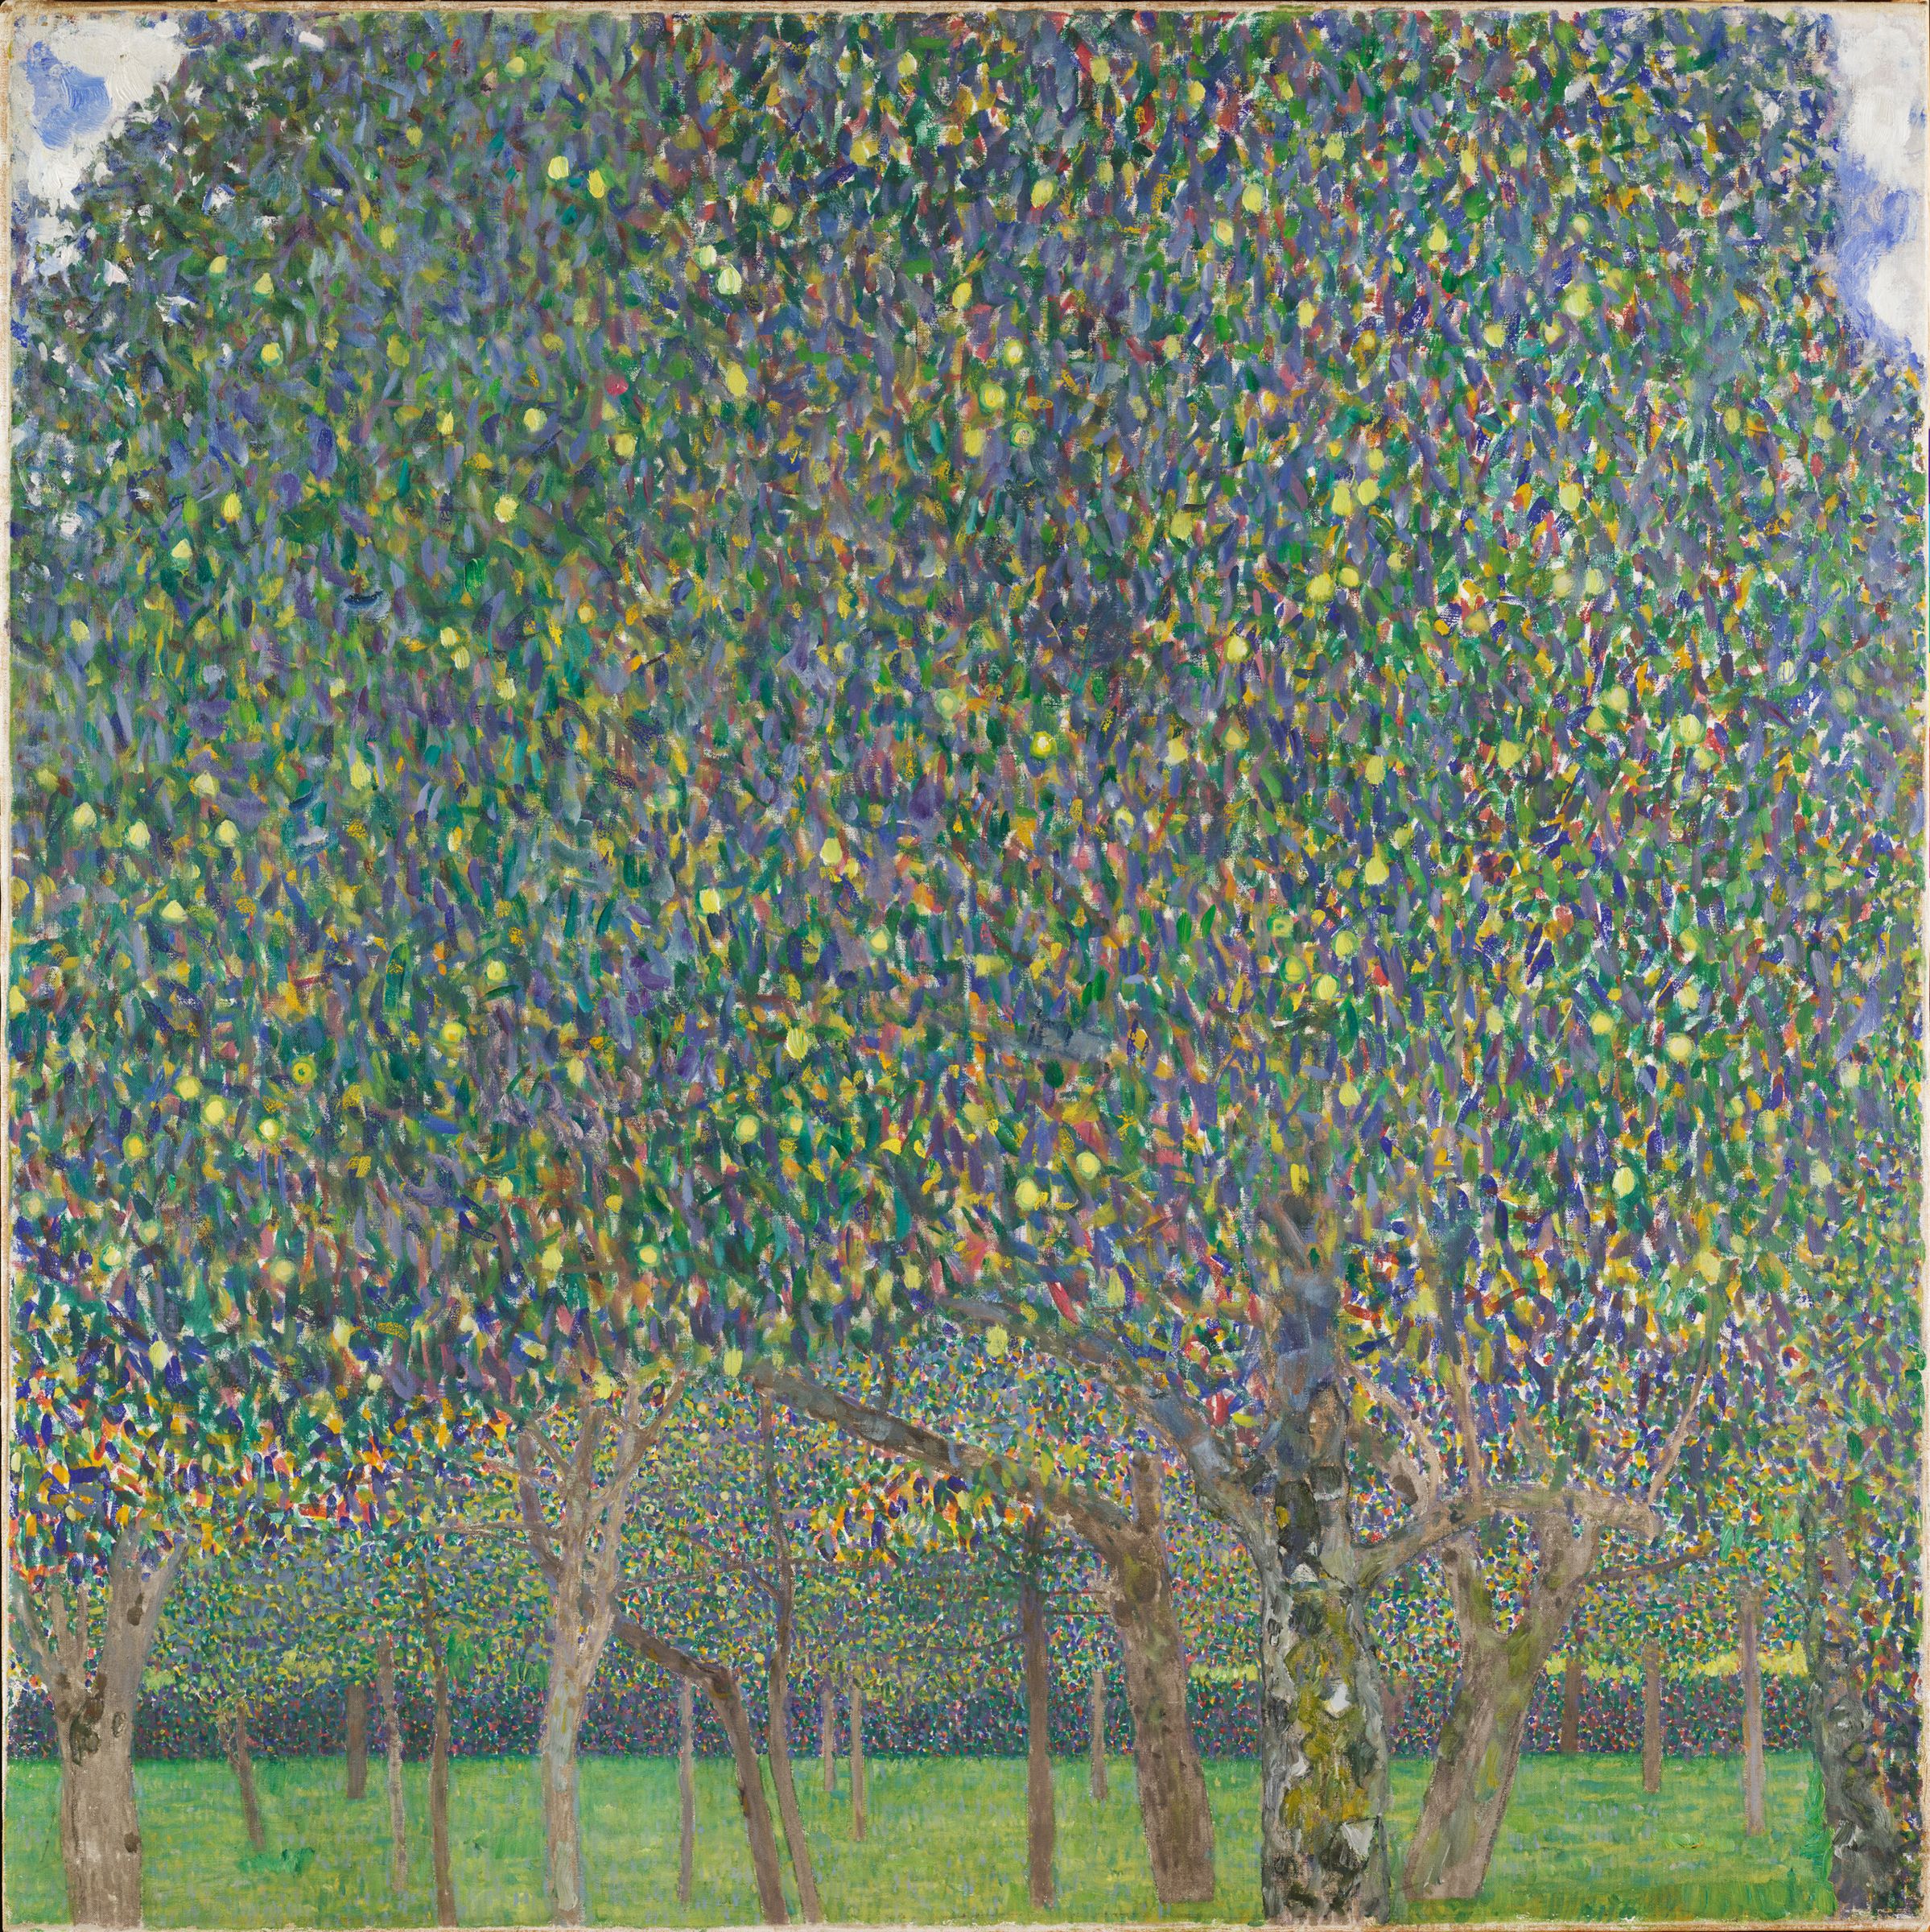 梨树 by 古斯塔夫· 克林姆特画 - 1903 (画家于1903/1918重绘) - 101 x 101 cm 哈佛艺术博物馆